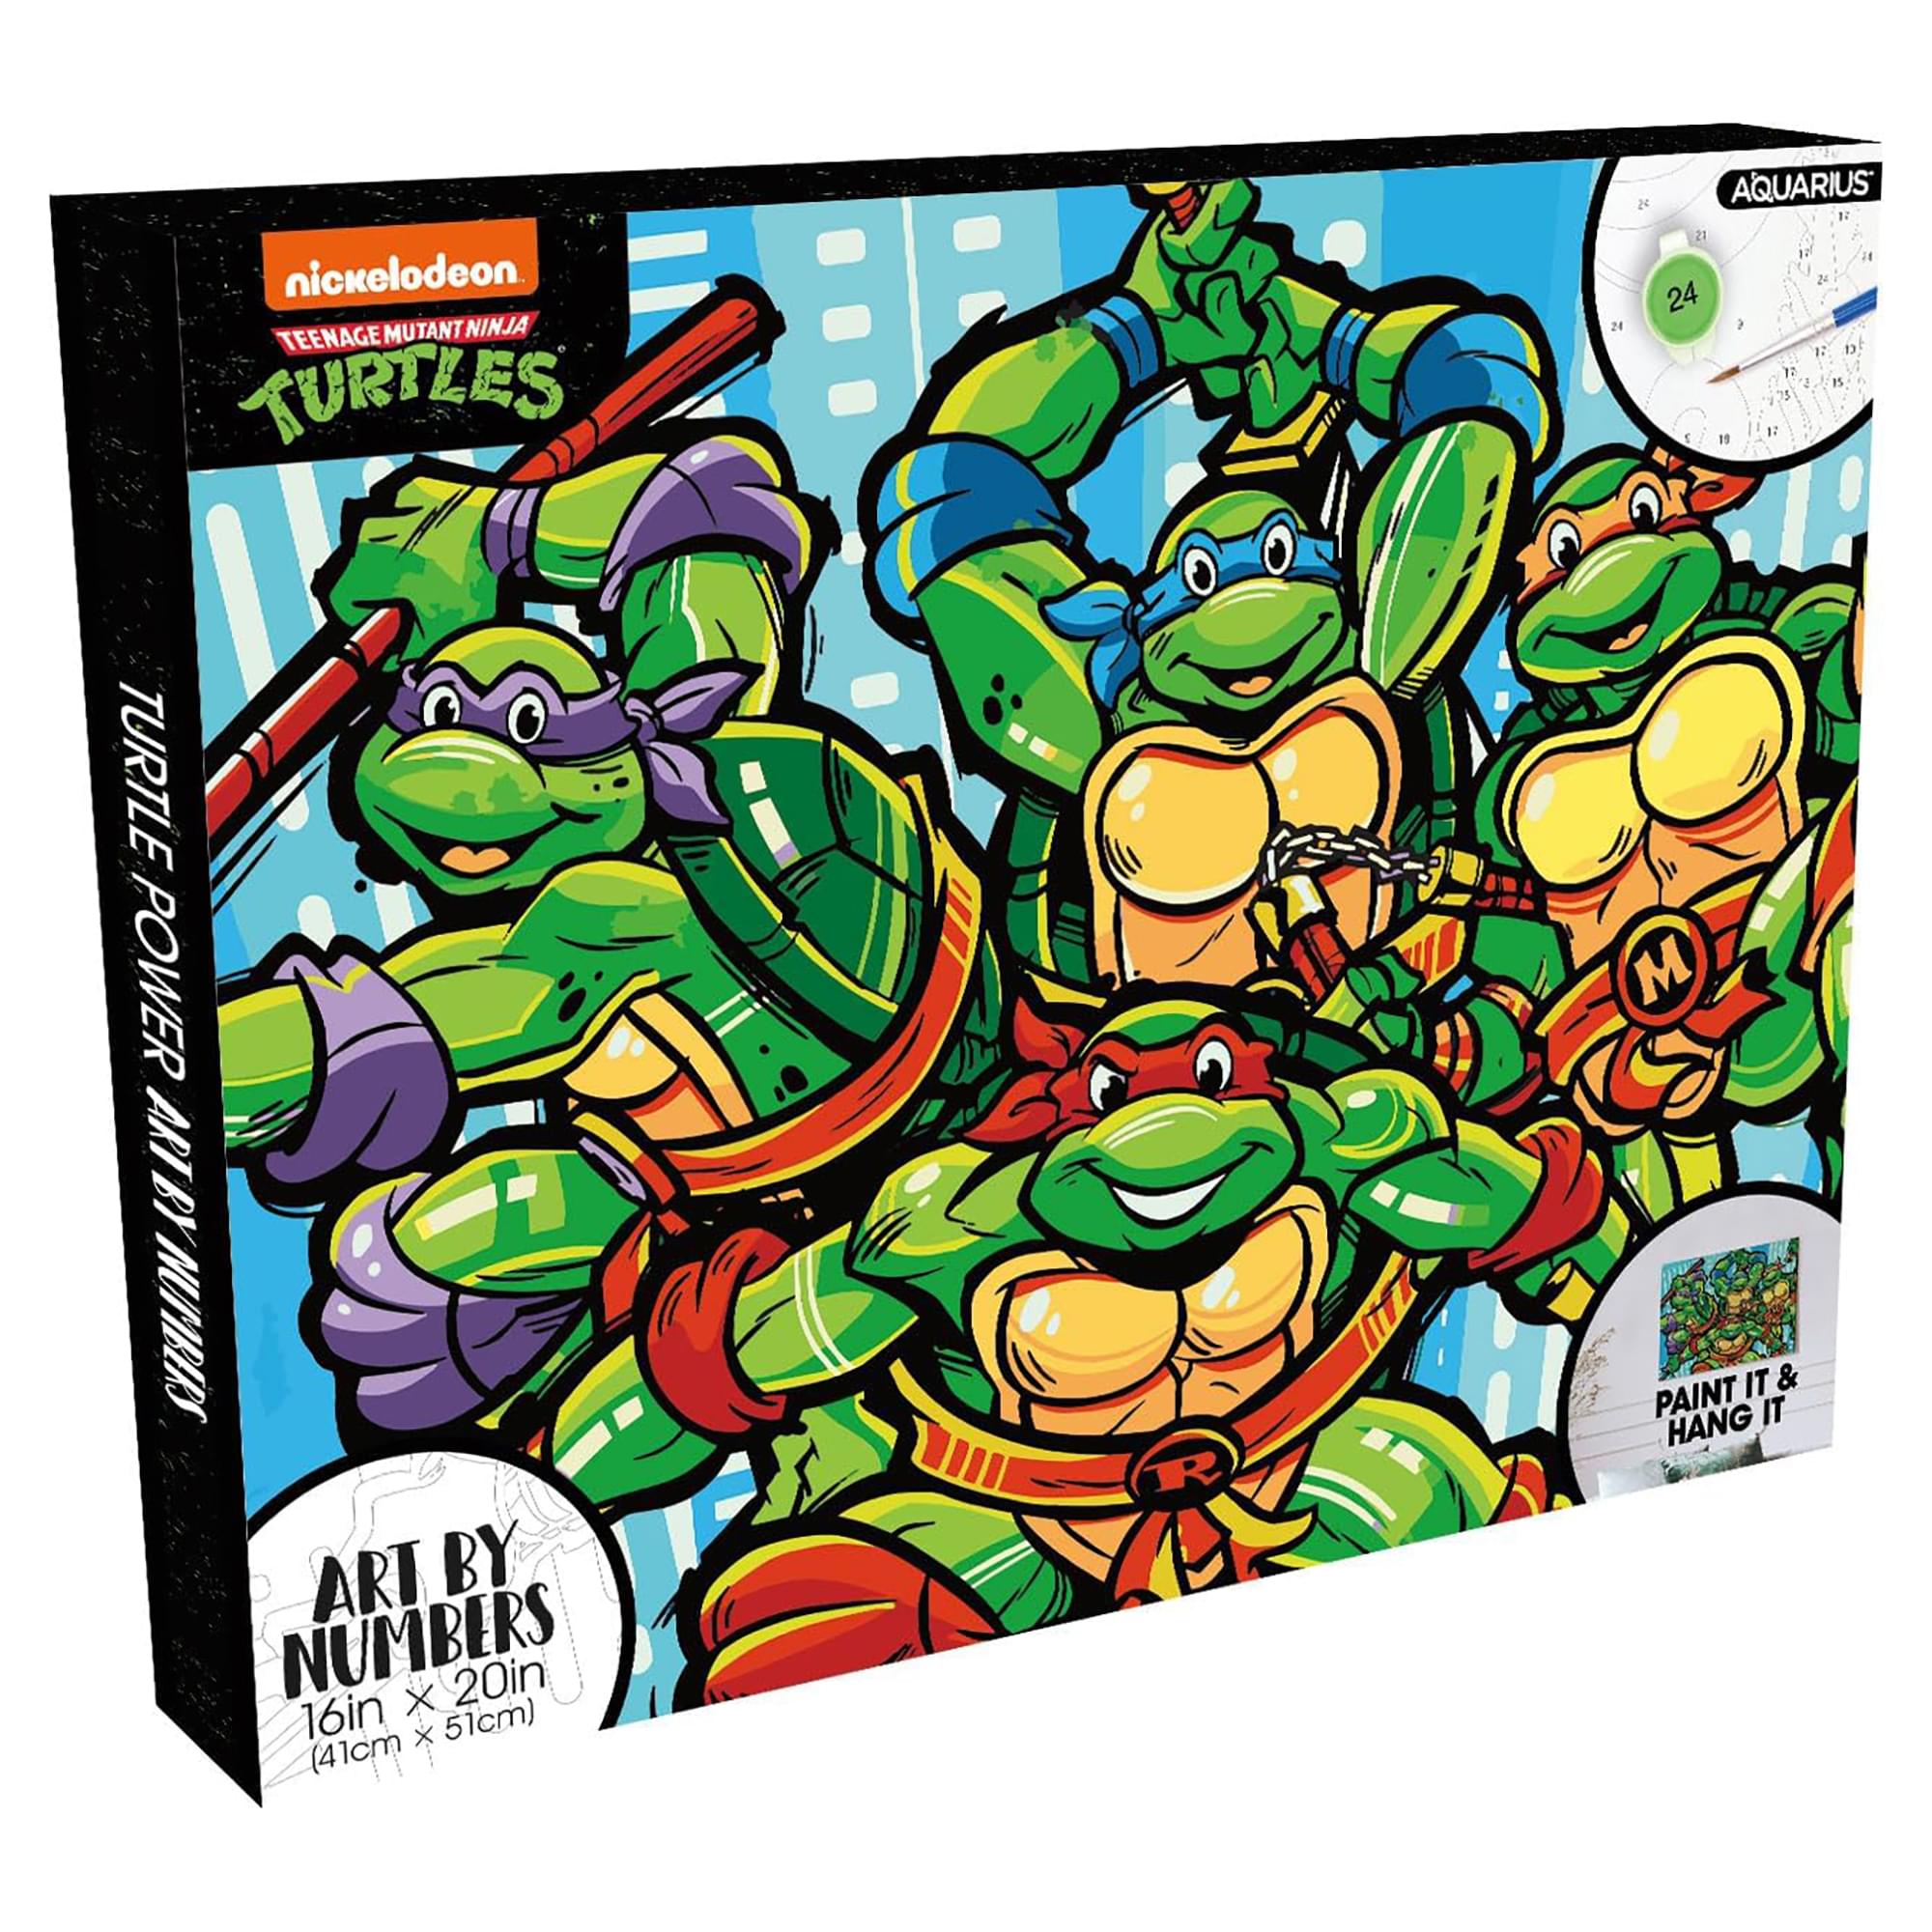 Teenage Mutant Ninja Turtles Art By Numbers Painting Kit